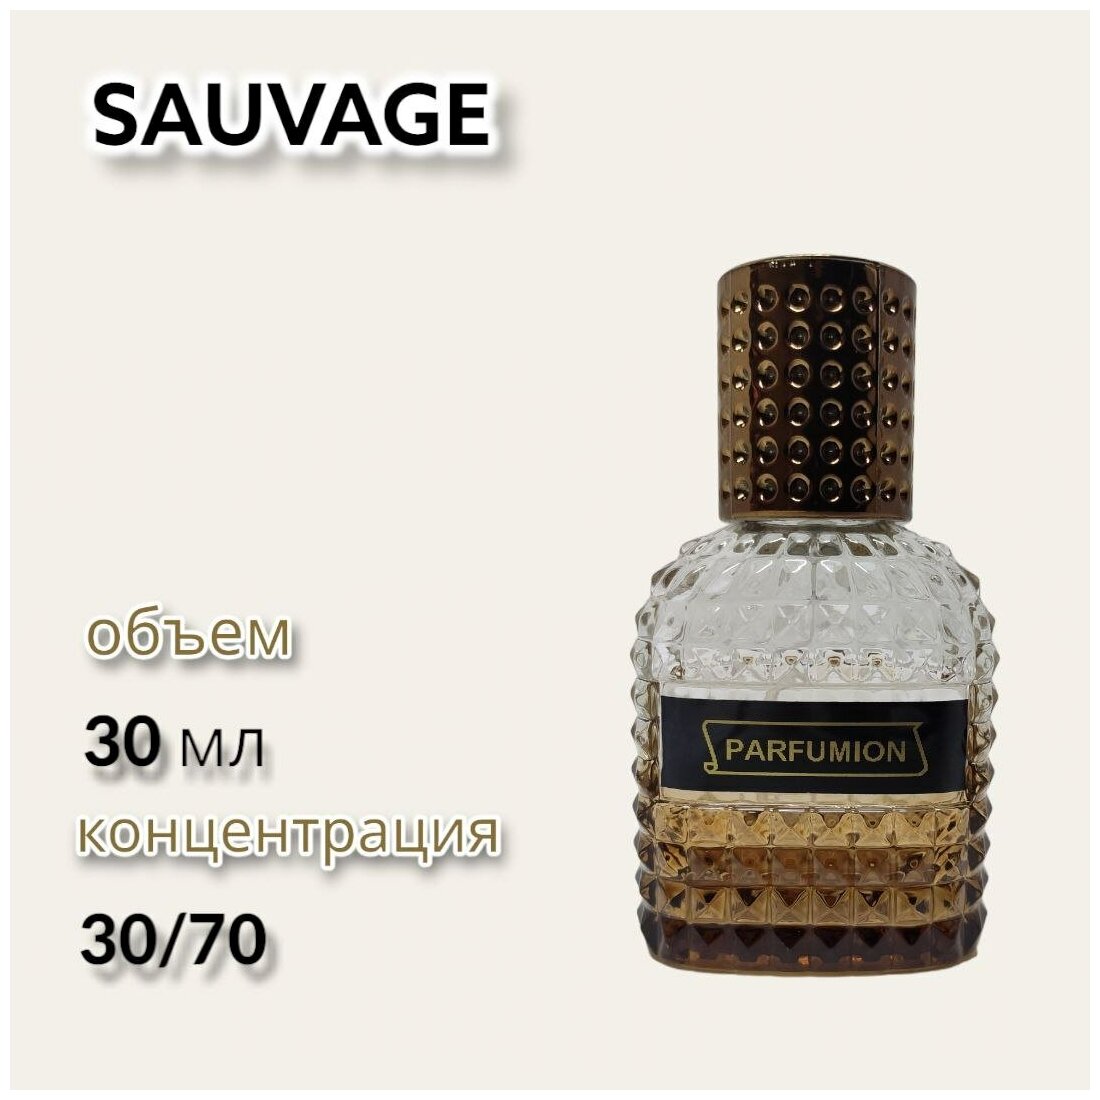 Духи "Sauvage" от Parfumion